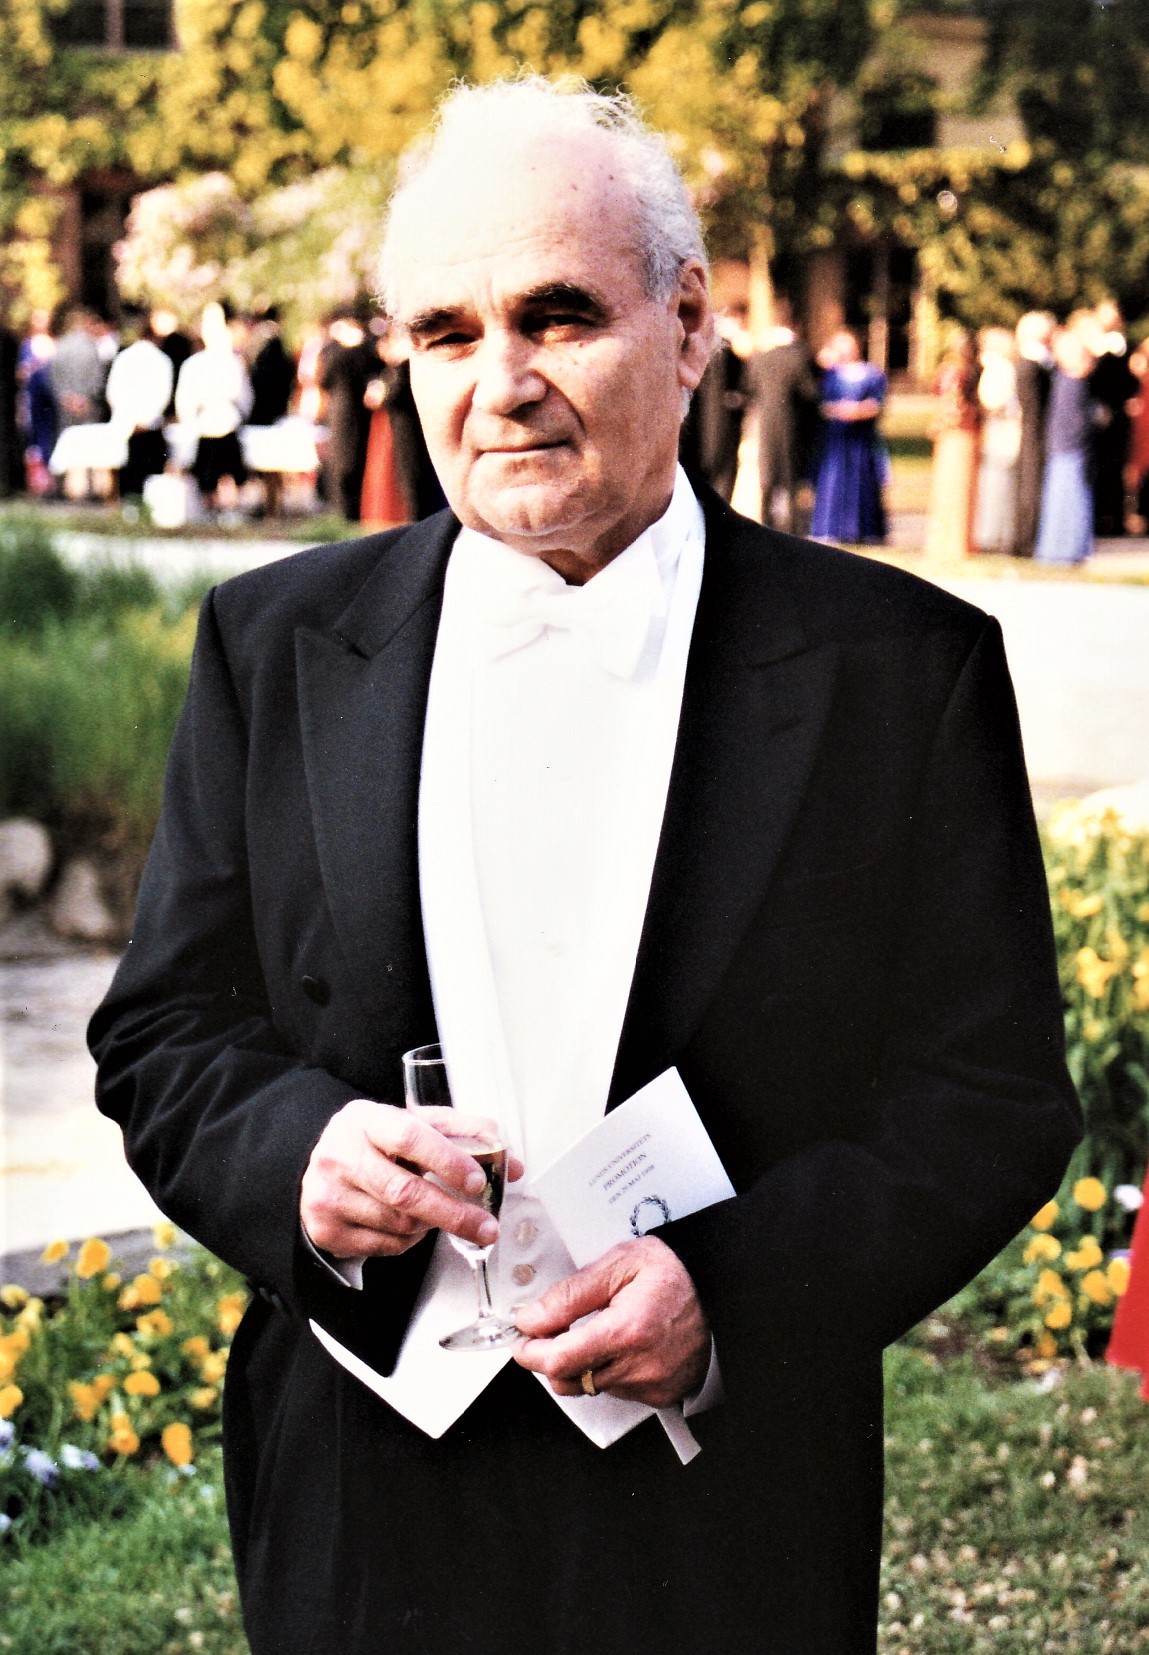 29 мая 1998 года. Мухадин Абубекирович Кумахов сразу после церемонии получения звания Почетного доктора Лундского Университета (Швеция)